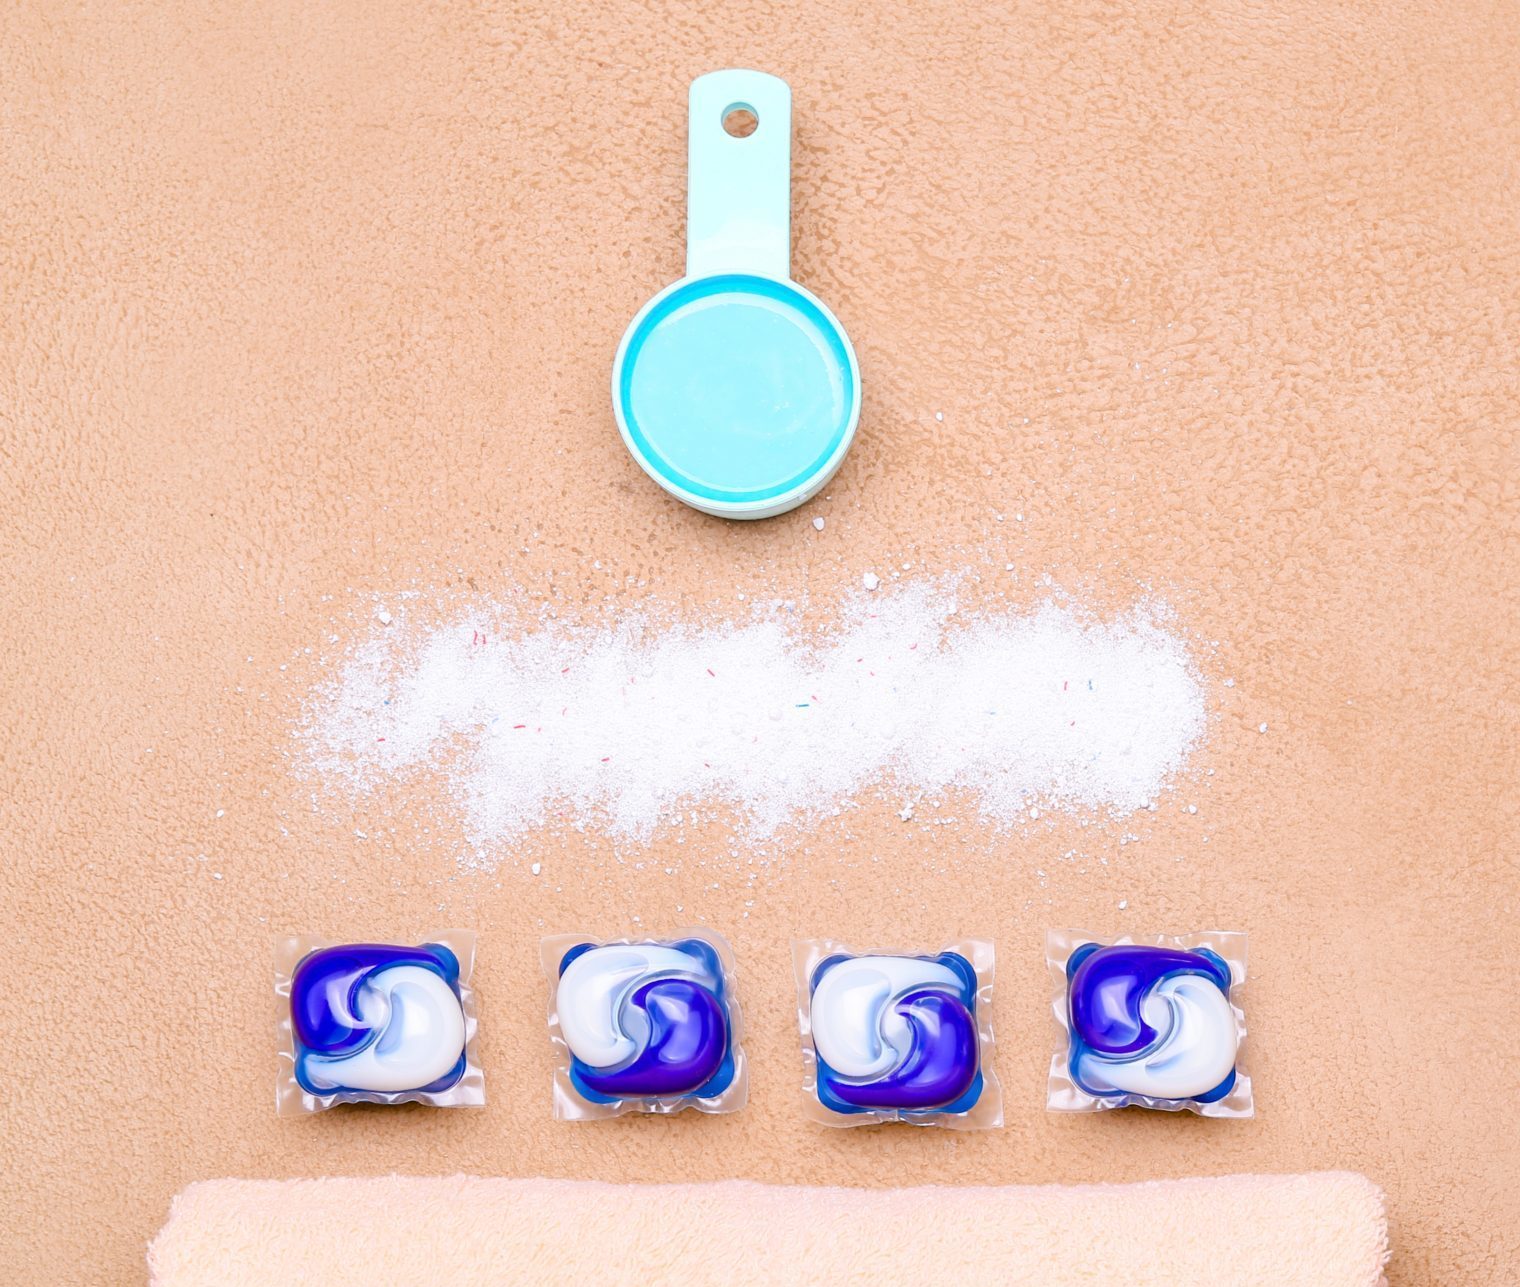 Different types of detergetns: Powder, Liquid, Pods